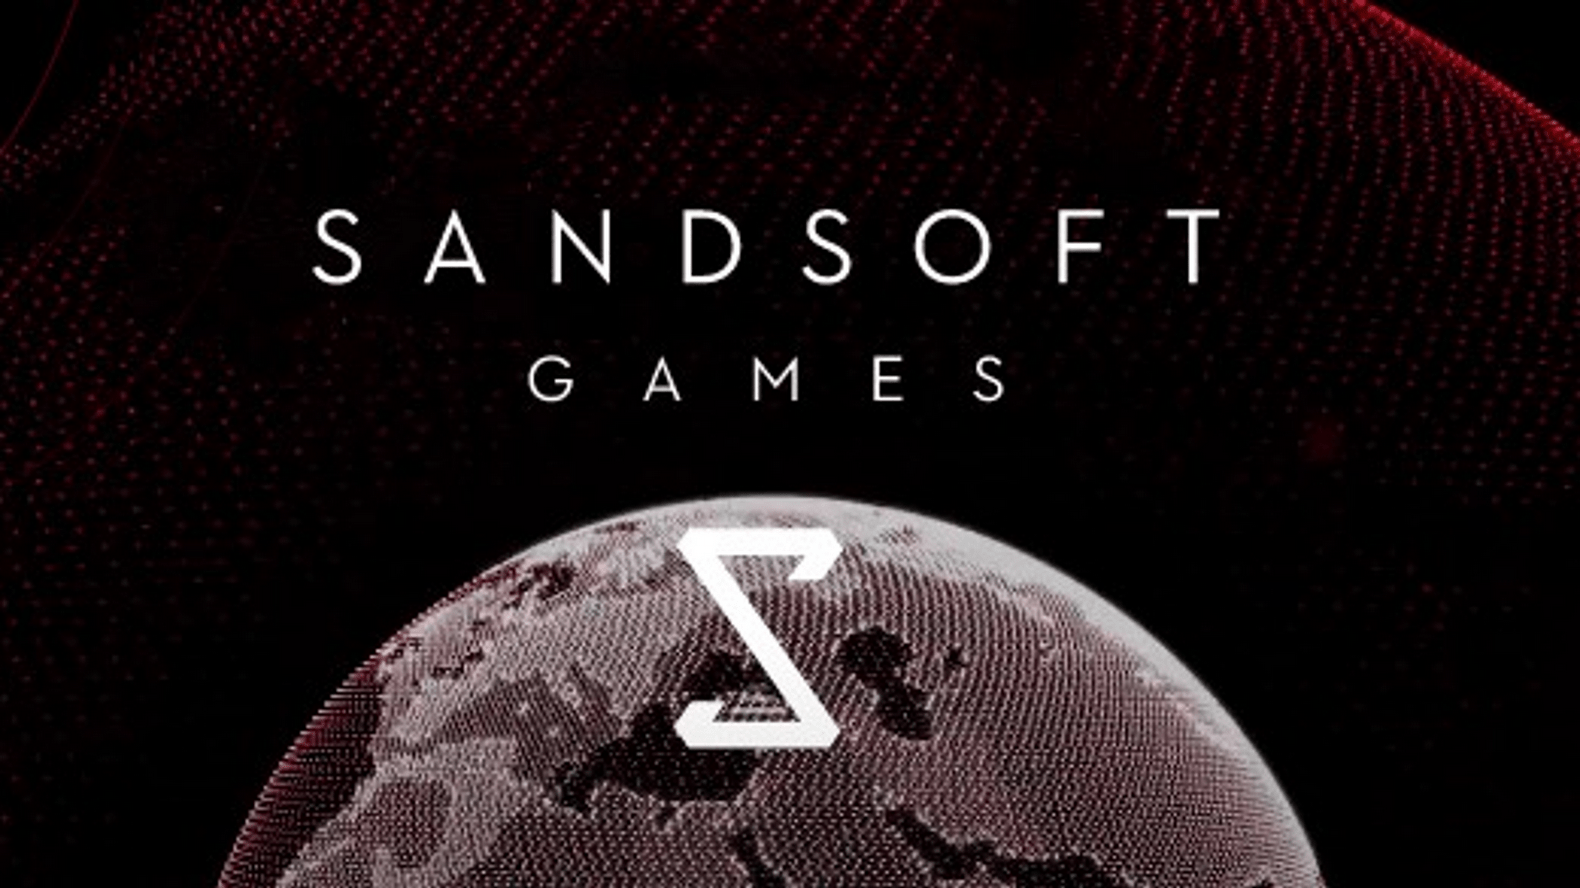 Sandsoft đẩy mạnh làm game ở châu Âu. Ảnh: Pocket Gamer Connects.